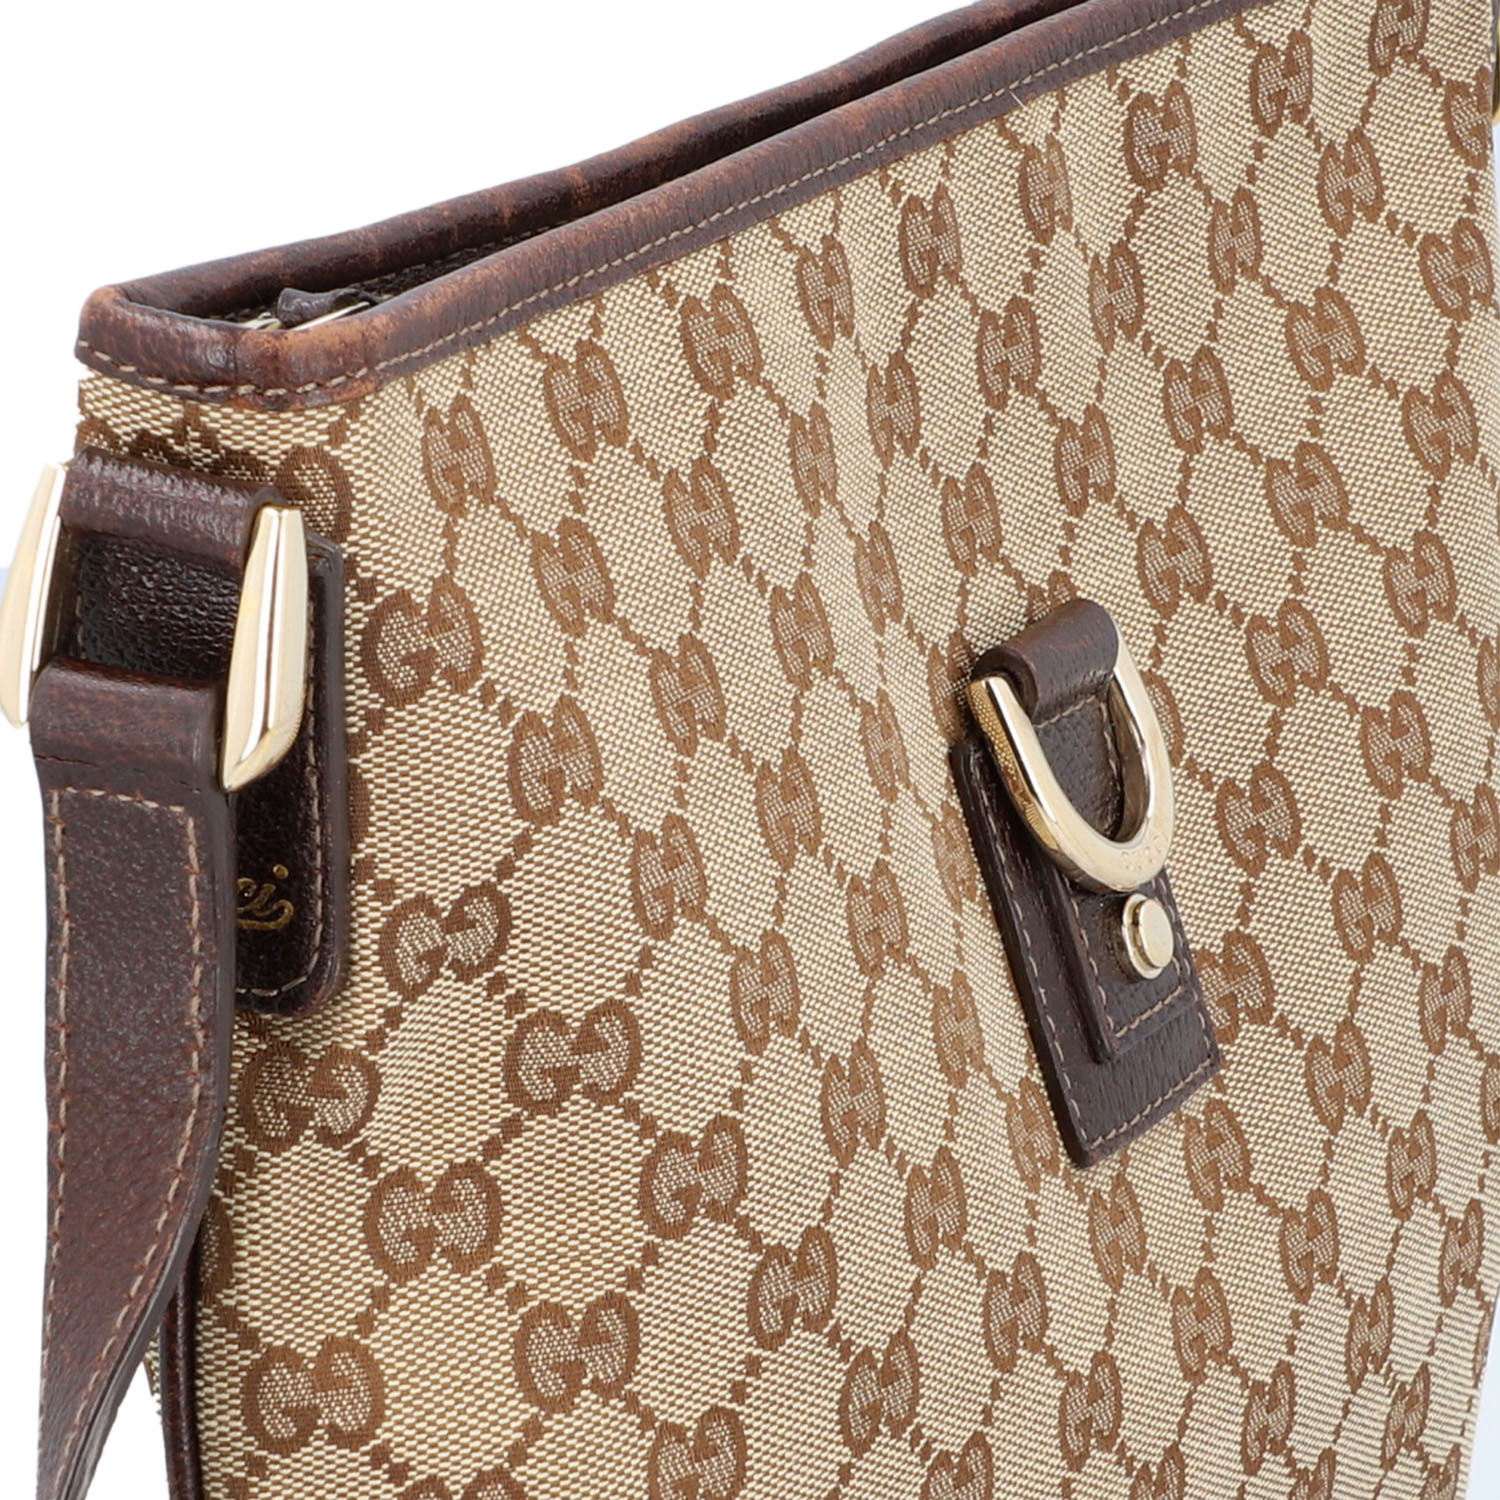 GUCCI Handtasche. Guccissima Design auf Textil in Beige und Braun, braunfarbene Leder- - Image 8 of 8